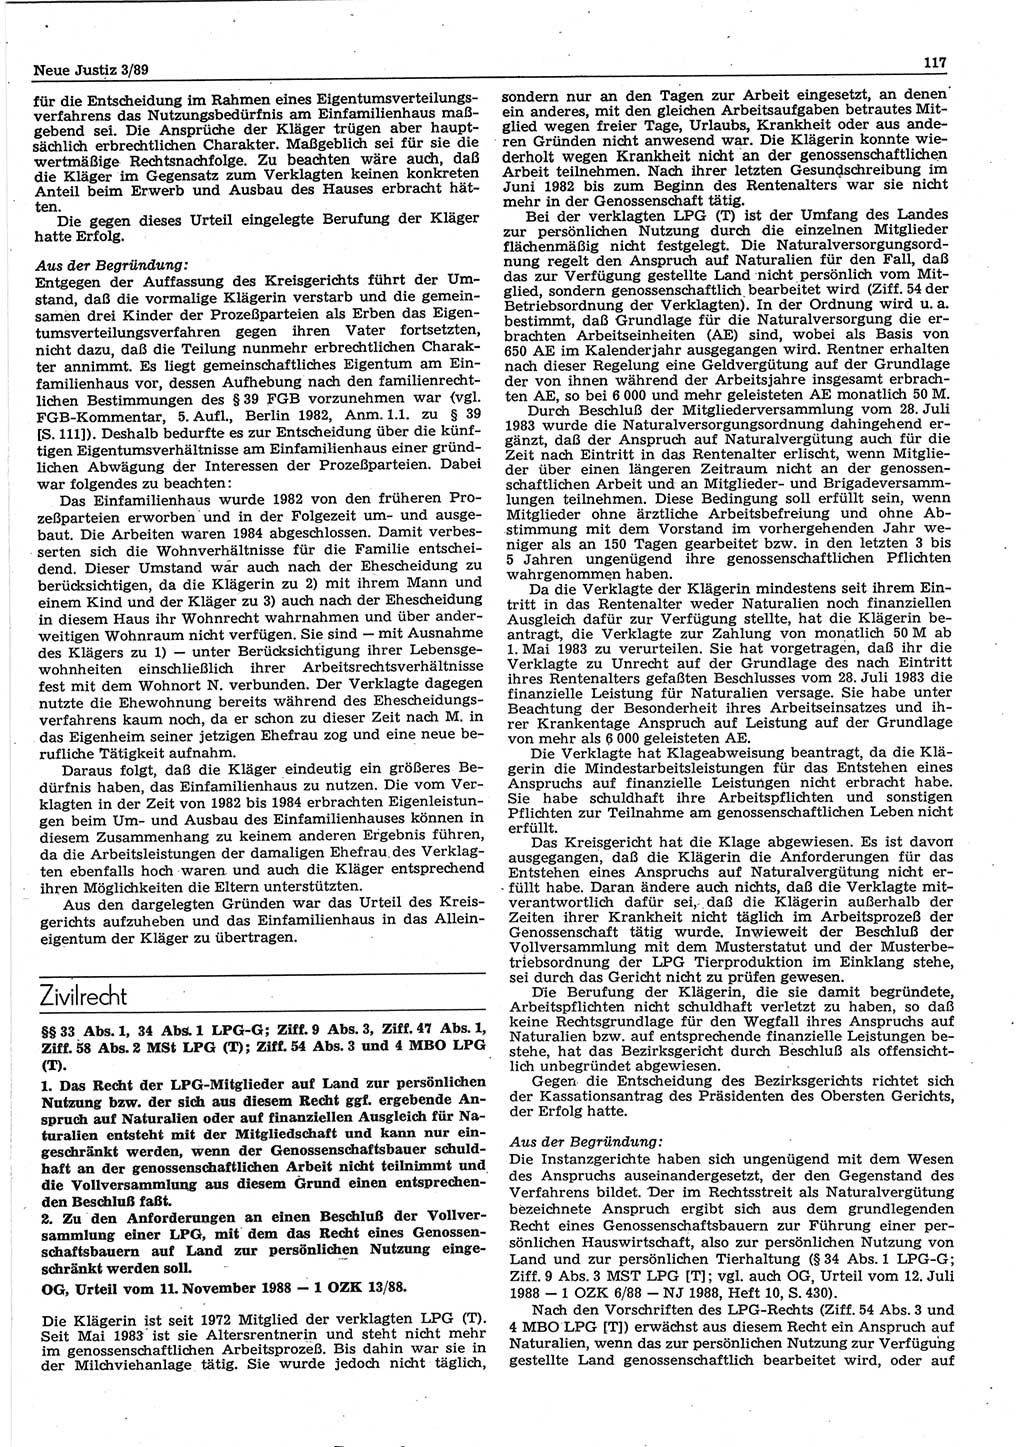 Neue Justiz (NJ), Zeitschrift für sozialistisches Recht und Gesetzlichkeit [Deutsche Demokratische Republik (DDR)], 43. Jahrgang 1989, Seite 117 (NJ DDR 1989, S. 117)